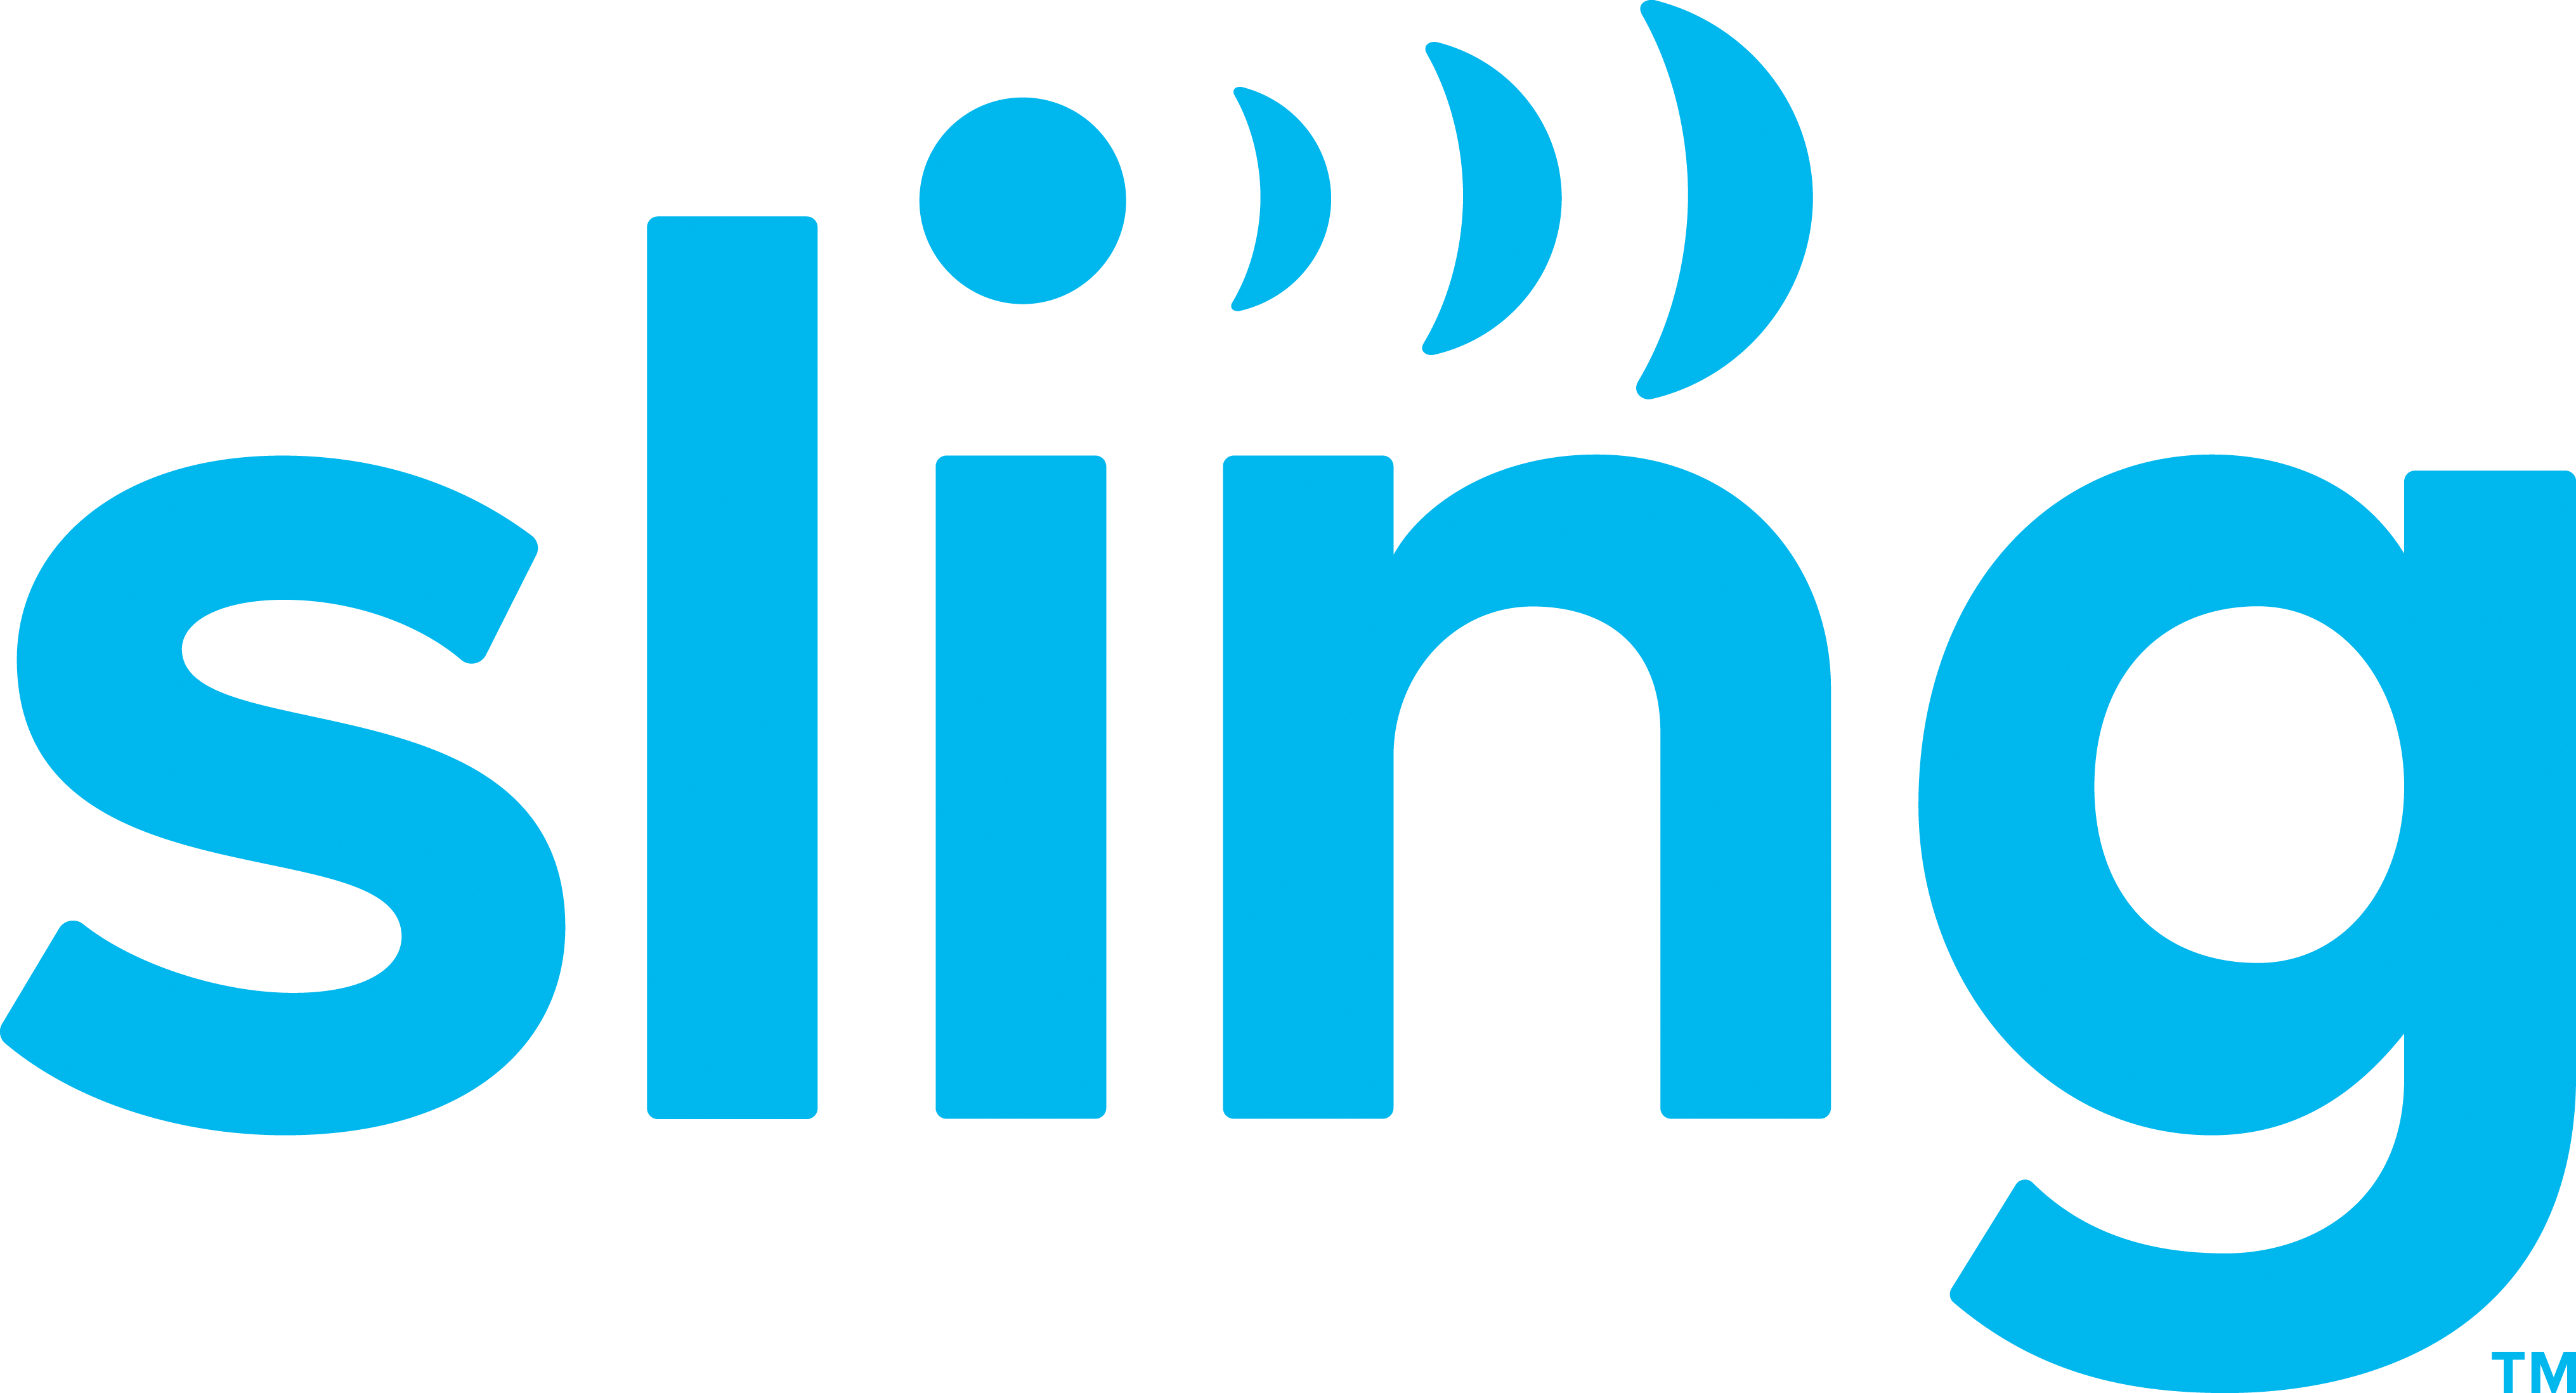 SlingTV Logo